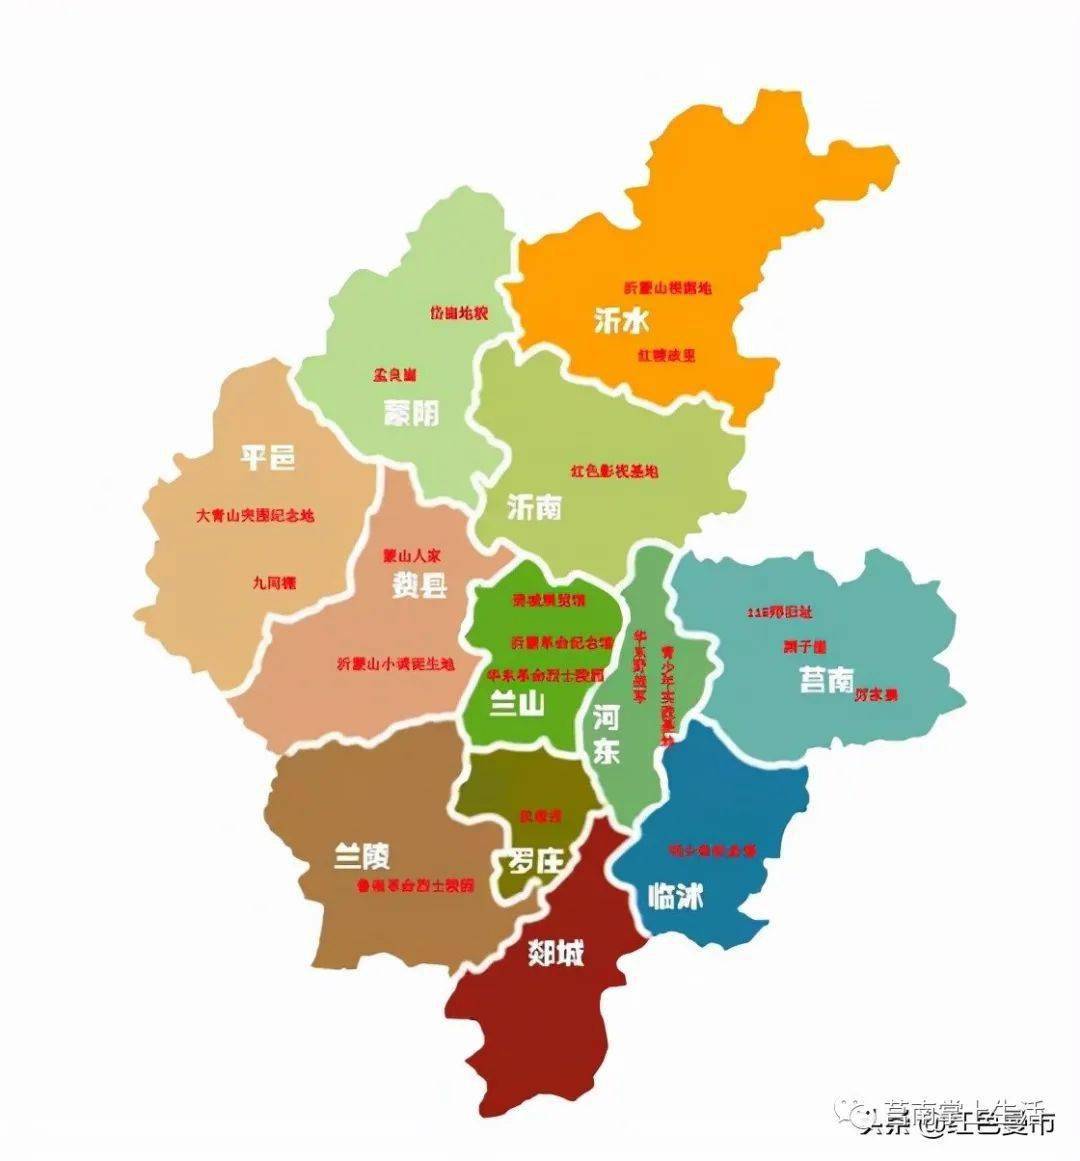 临沂最东部县-莒南,拥有大型产业集群,两座高铁站,两座城区